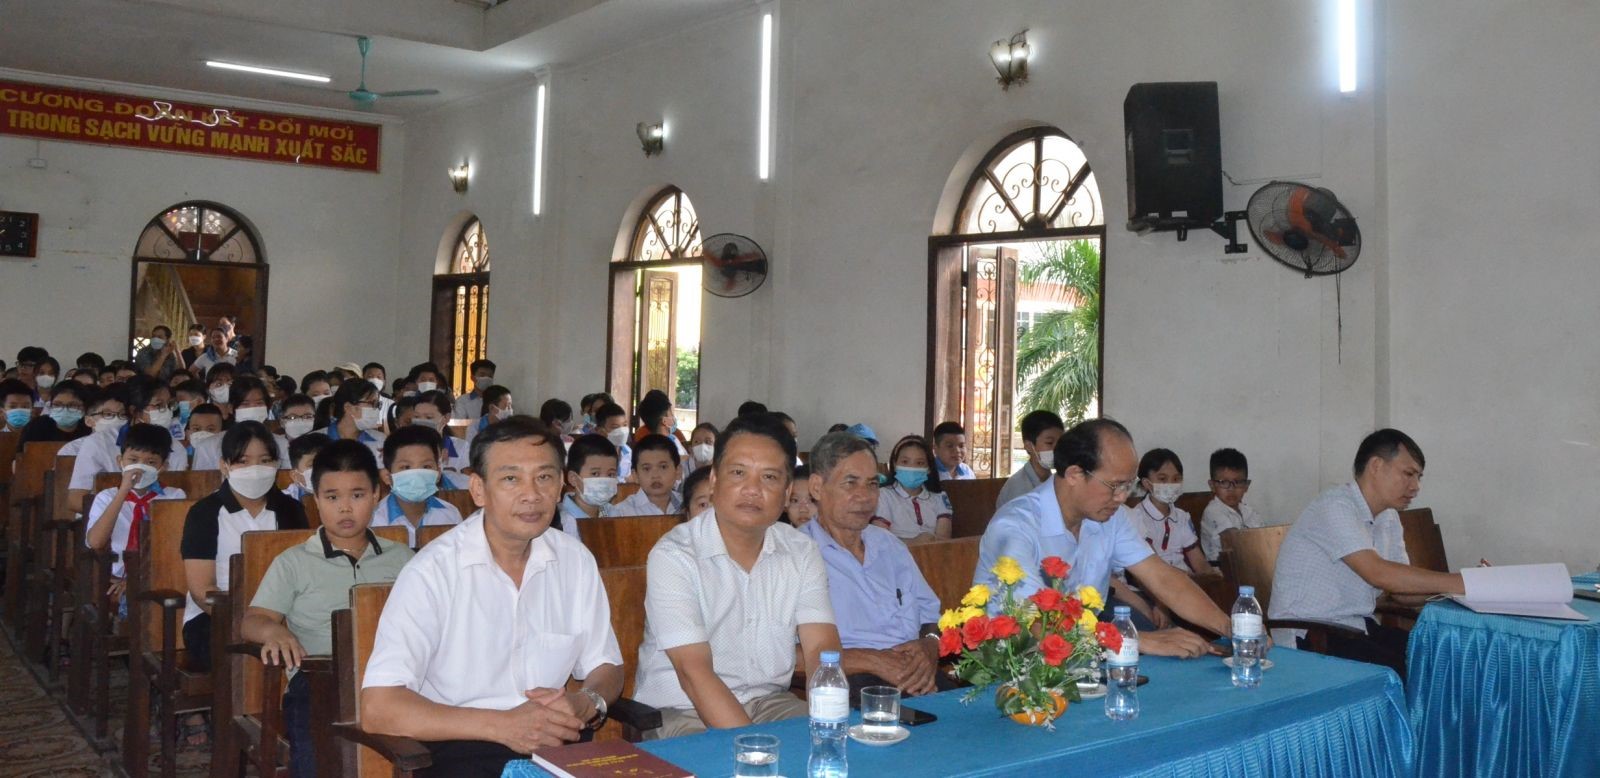 UBND Thị trấn Hưng Hà tổ chức Hội nghị khen thưởng gần 430 học sinh giỏi các cấp năm học 2021-2022